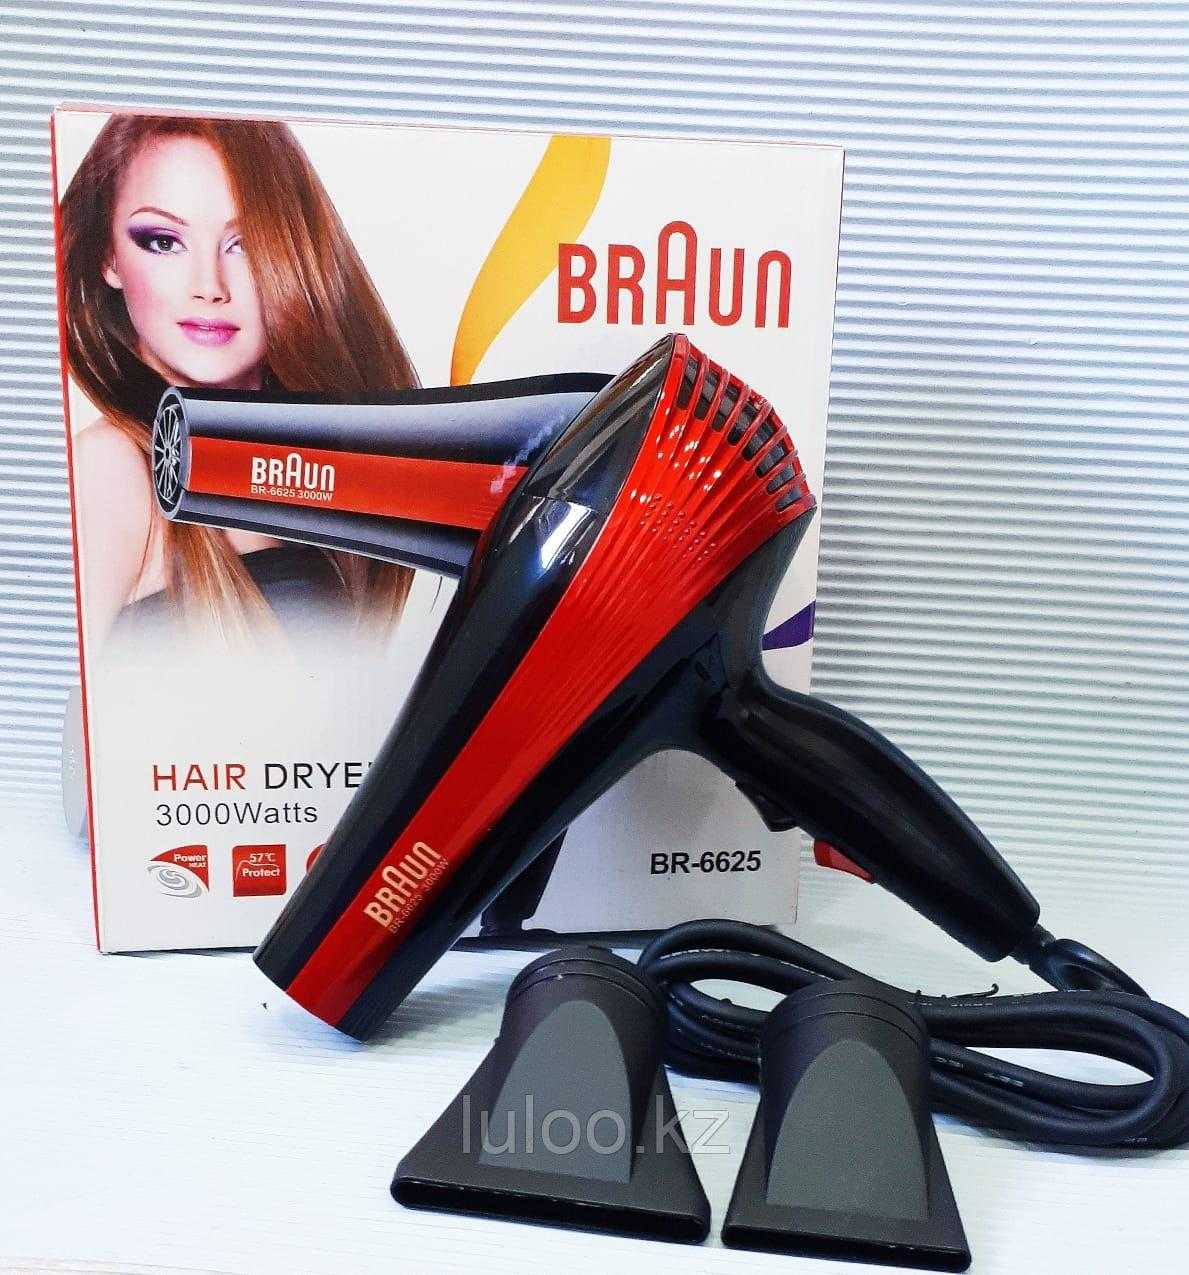 Braun satin hair 7: отзывы покупателей